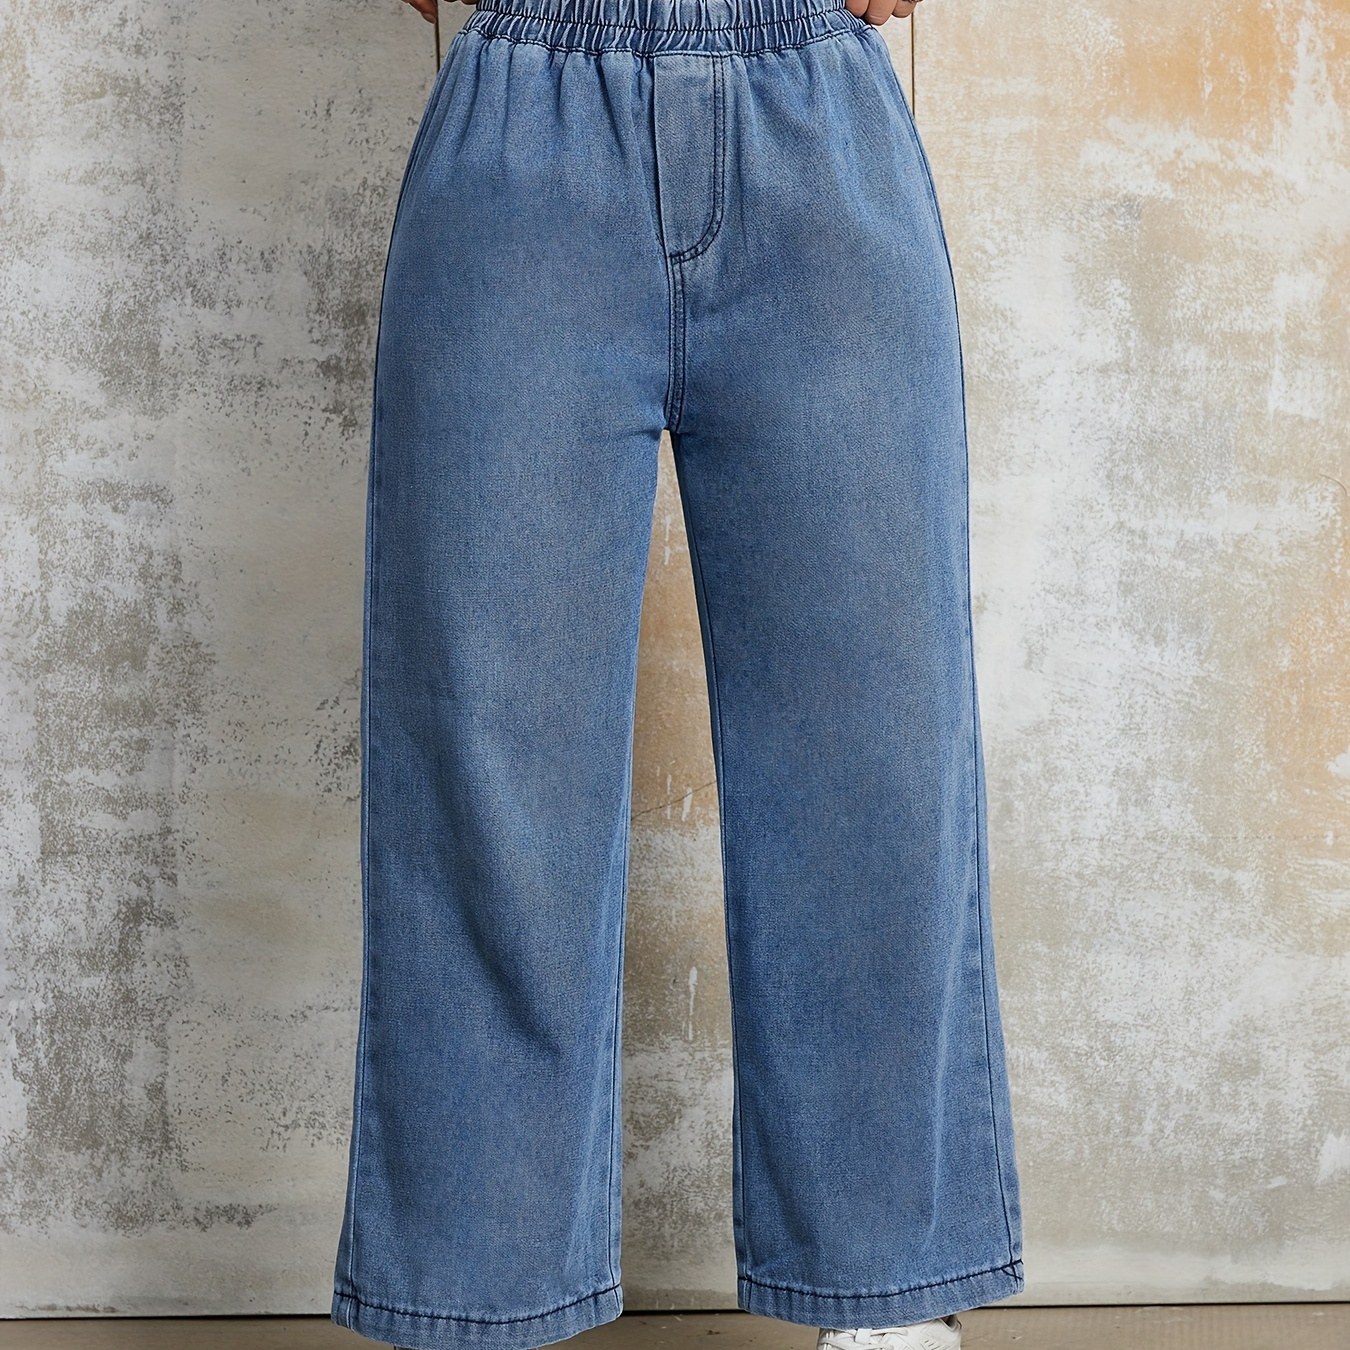 

Elastic Waist Loose Fit Denim Pants, Plain Washed Blue Wide Leg Jeans, Women's Denim Jeans & Clothing